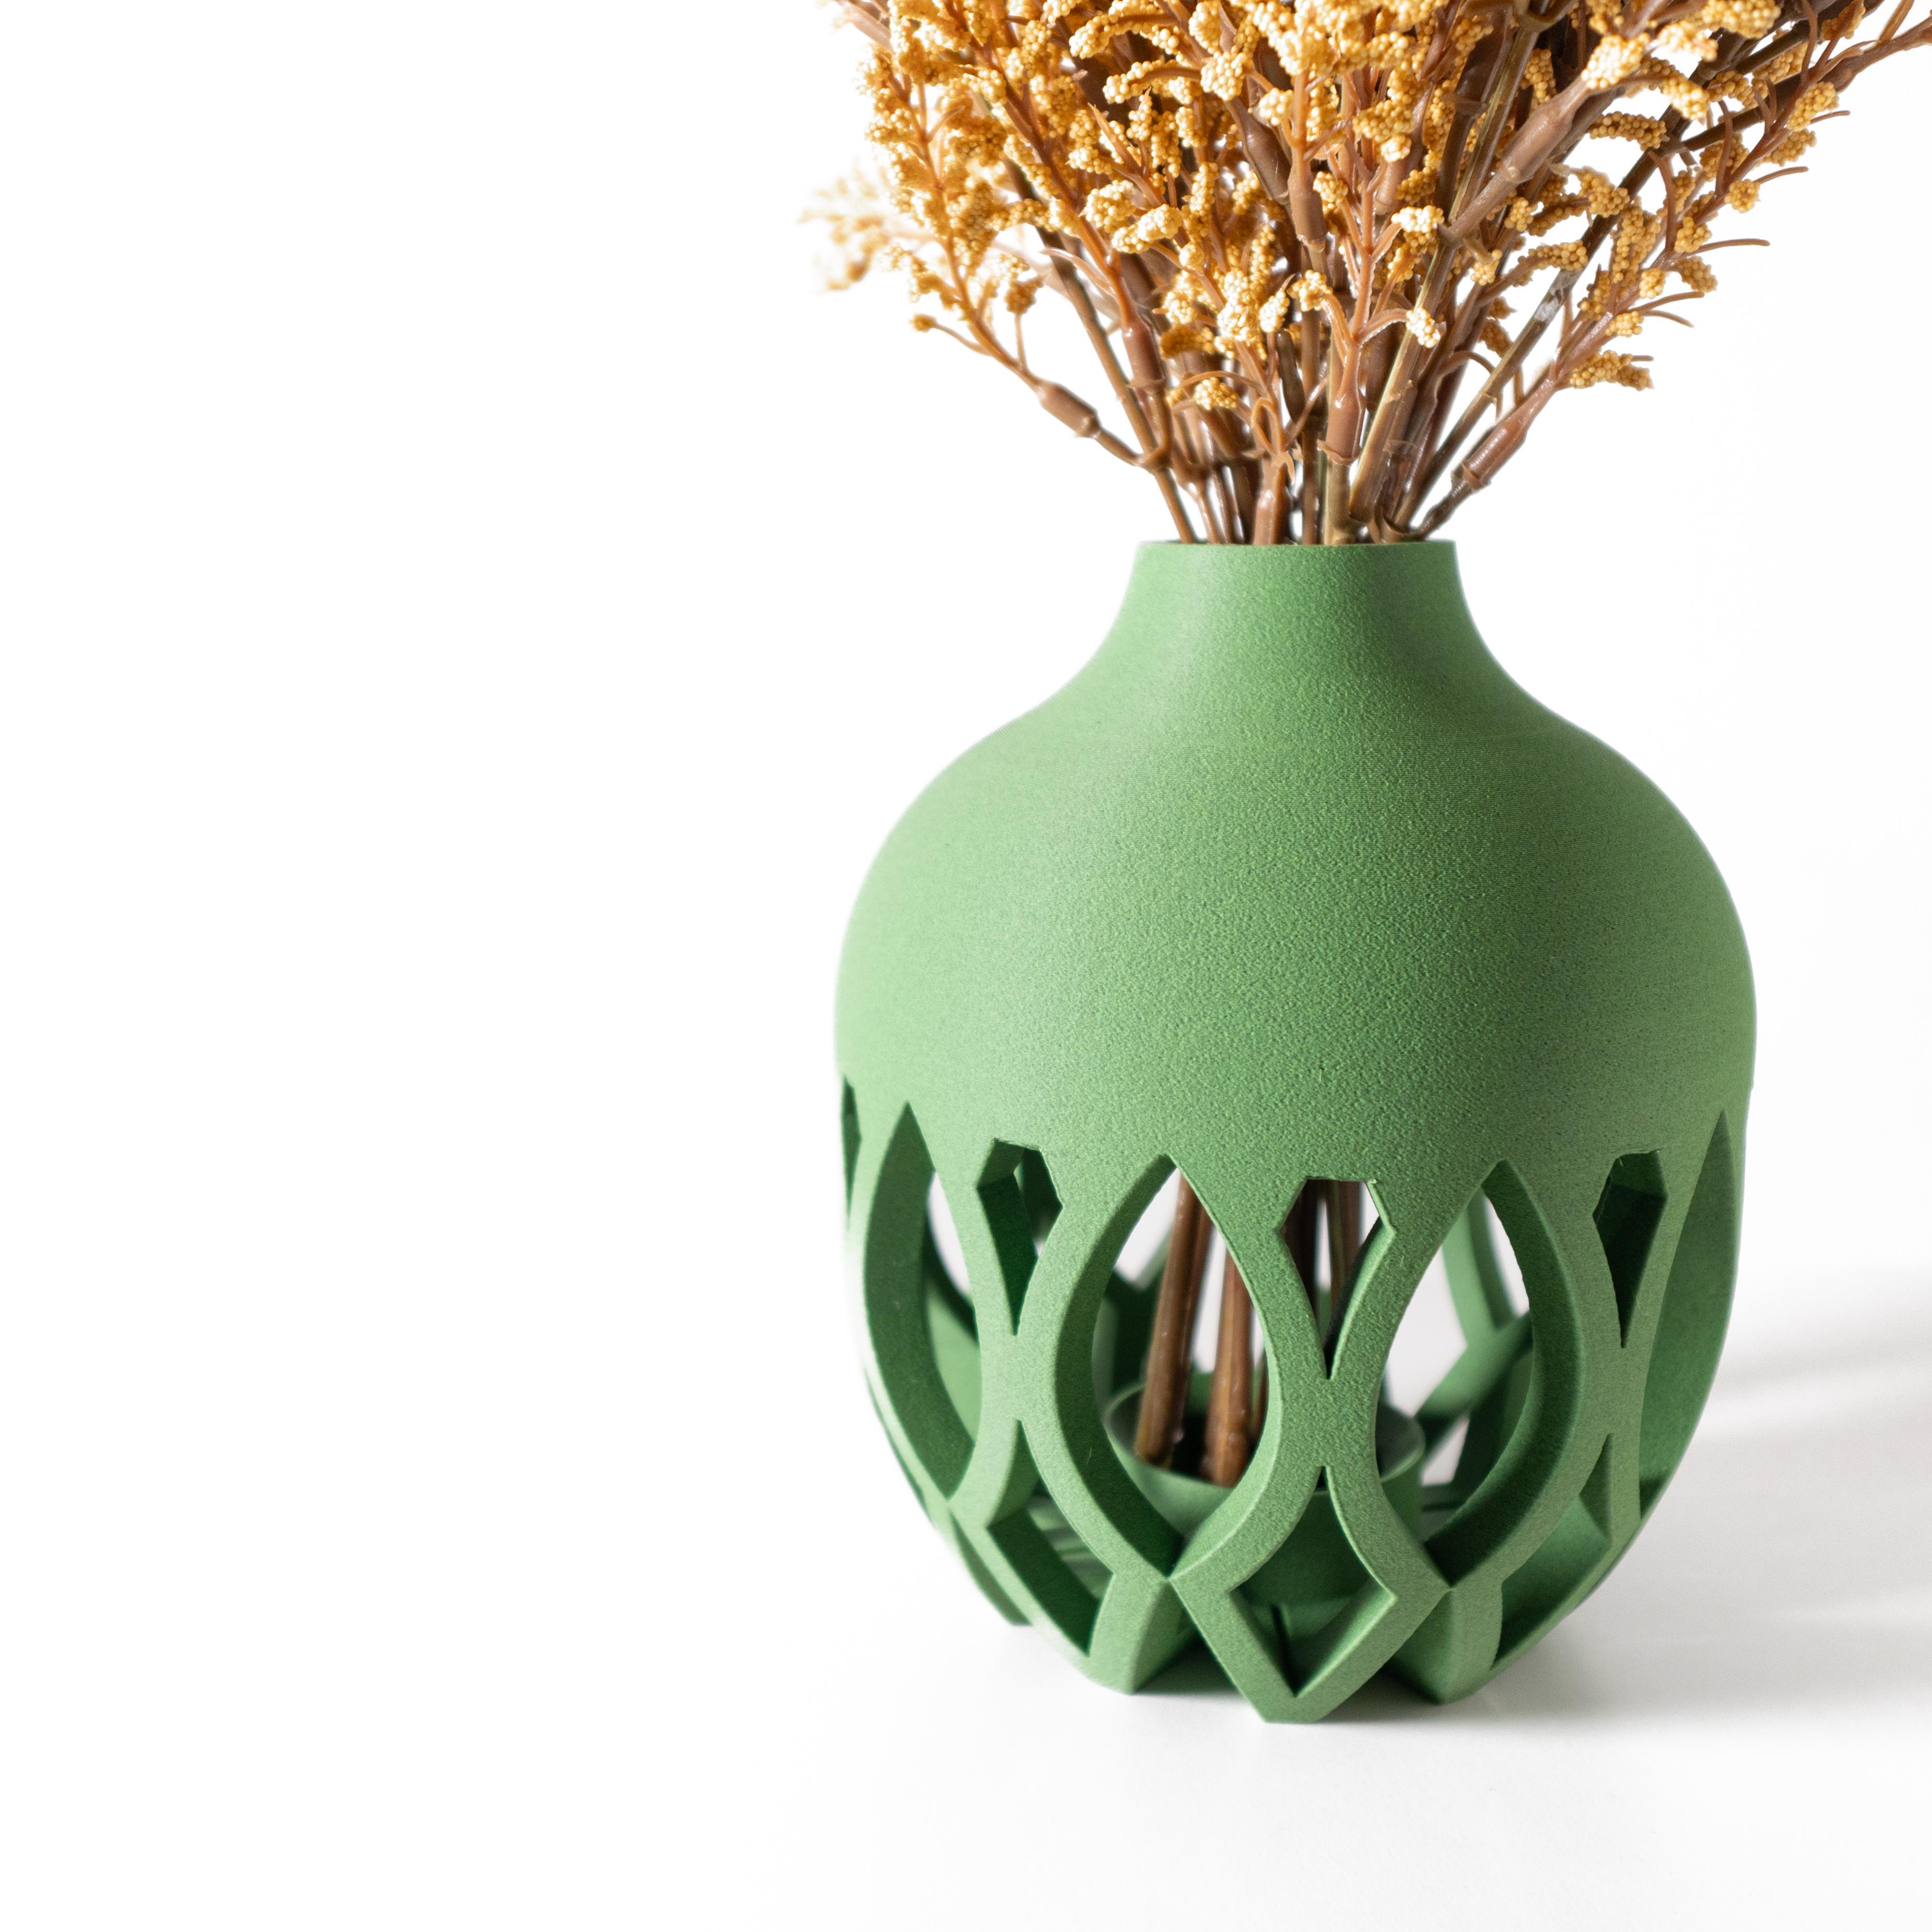 The Kova Short Vase by Terra de Verdant 3d model